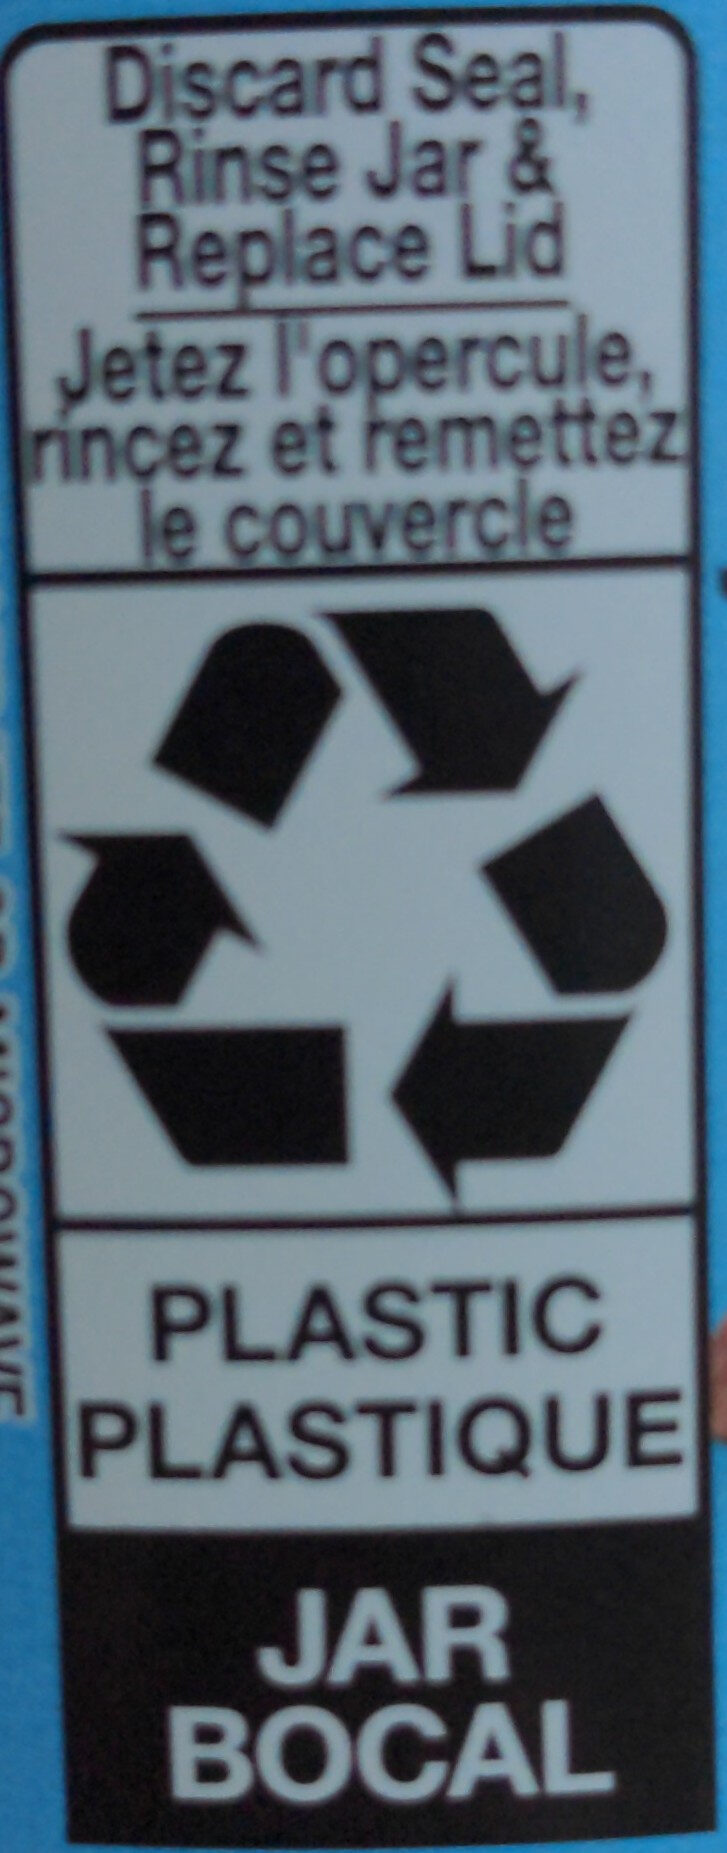 Hazelnut noisettes - Instruction de recyclage et/ou informations d'emballage